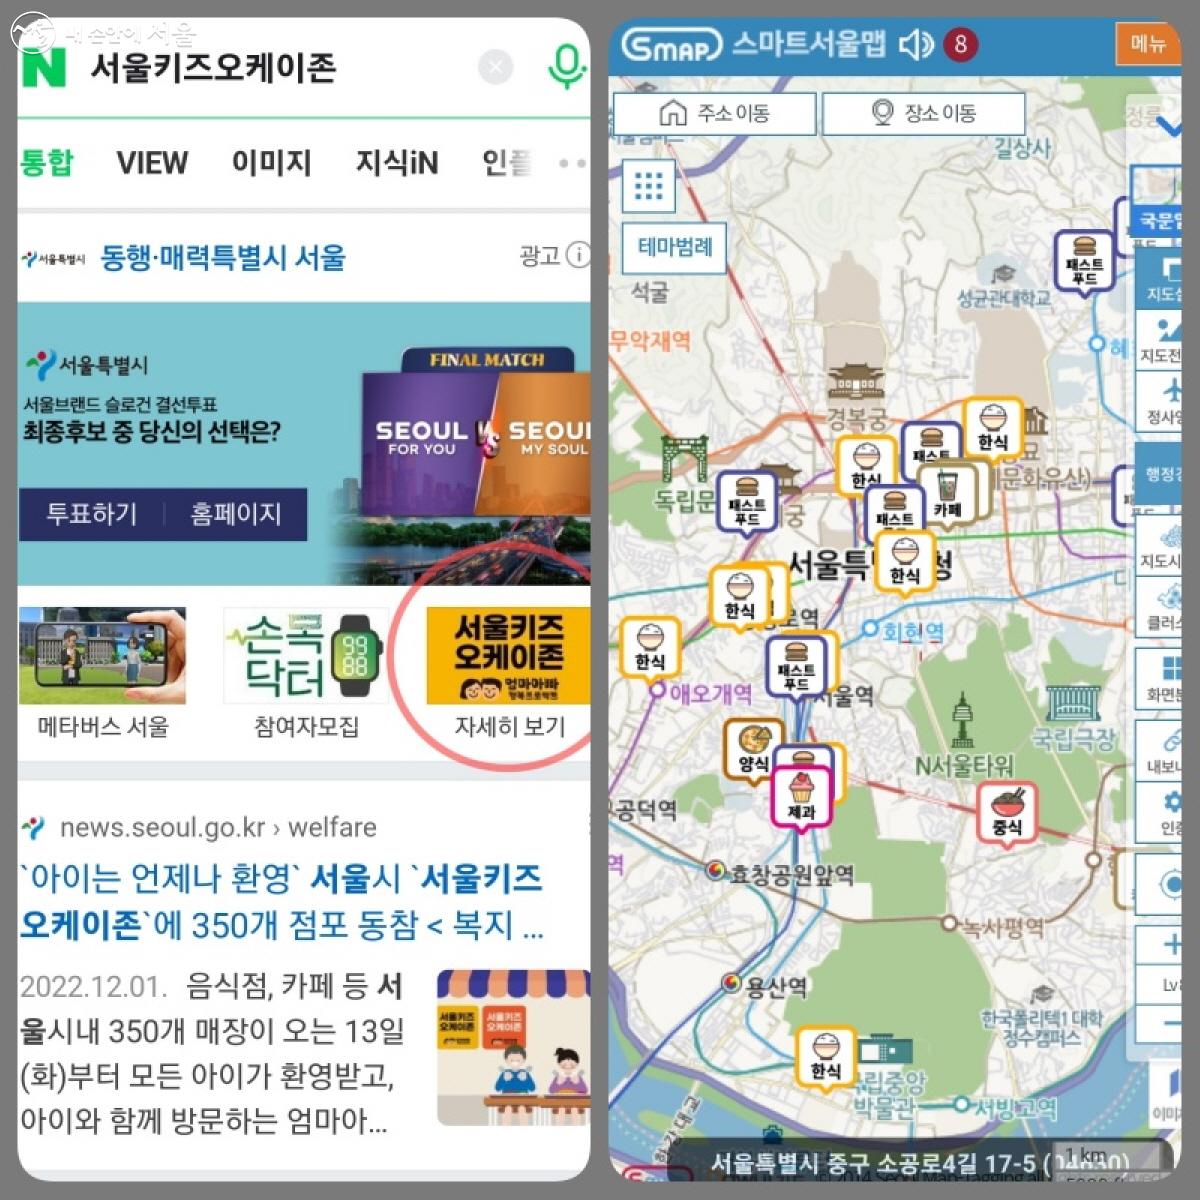 인터넷 검색창에 ‘서울키즈 오케이존’을 검색하면 스마트서울맵으로 연결된다. 